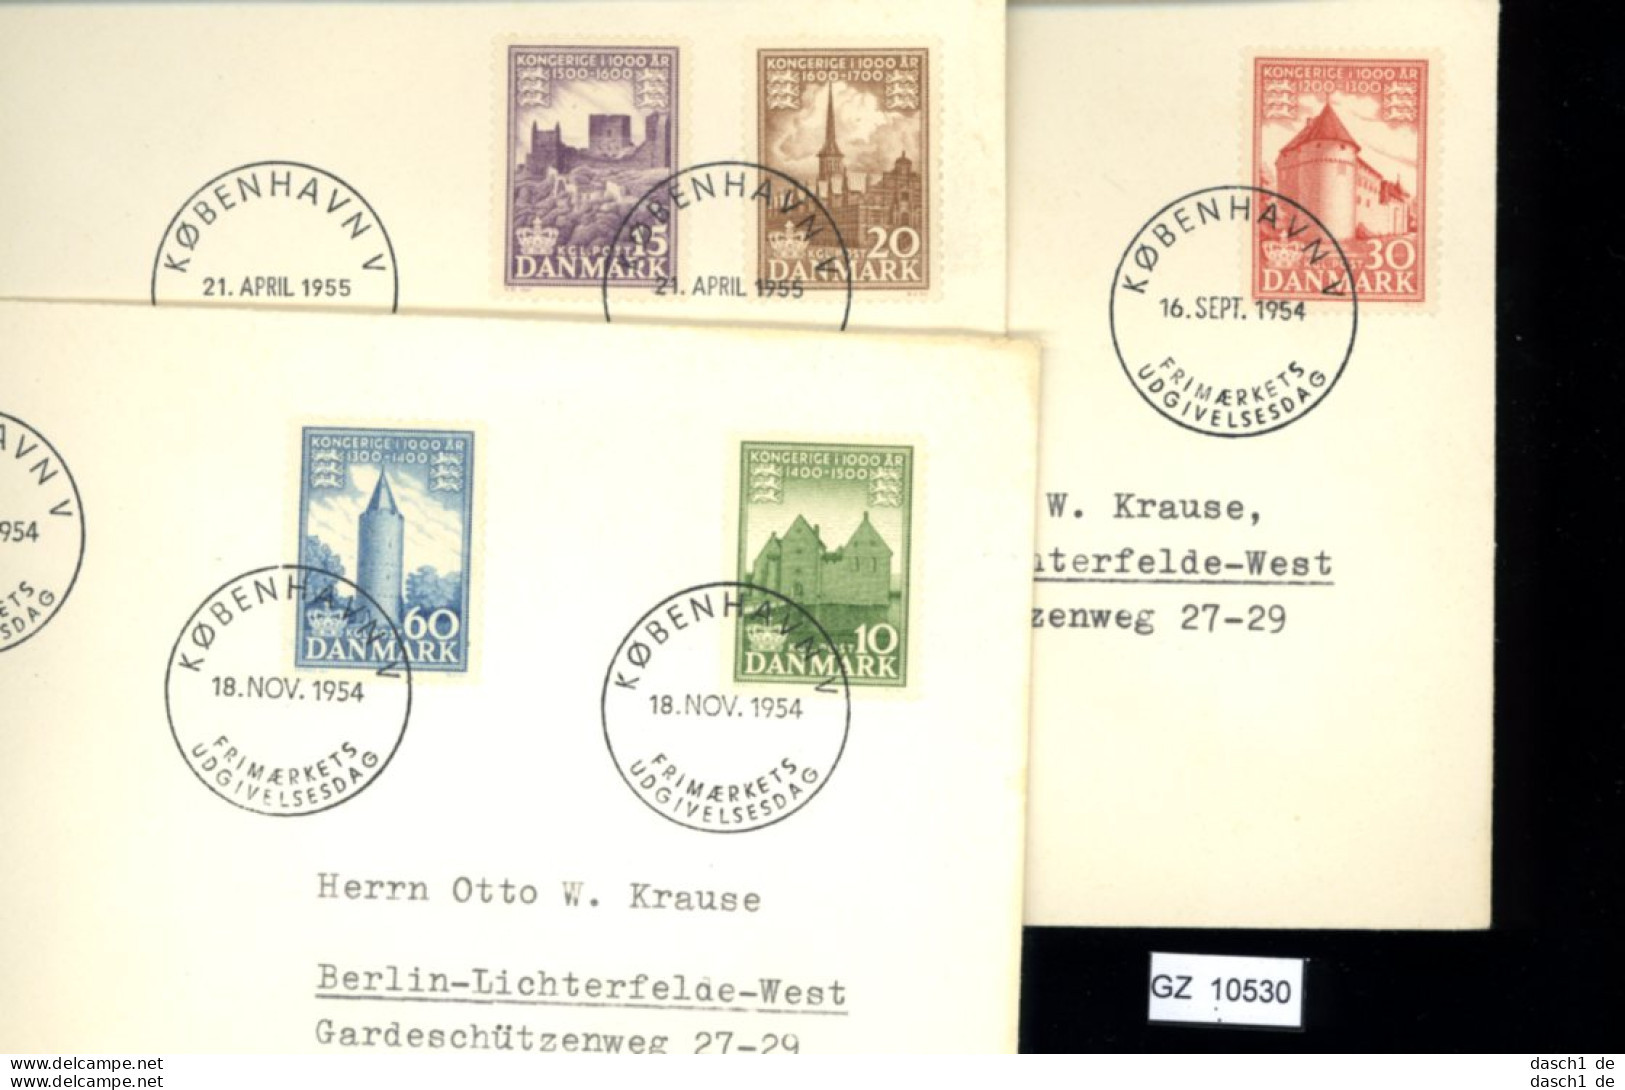 Dänemark, 11 Lose u.a. Brief von 1928